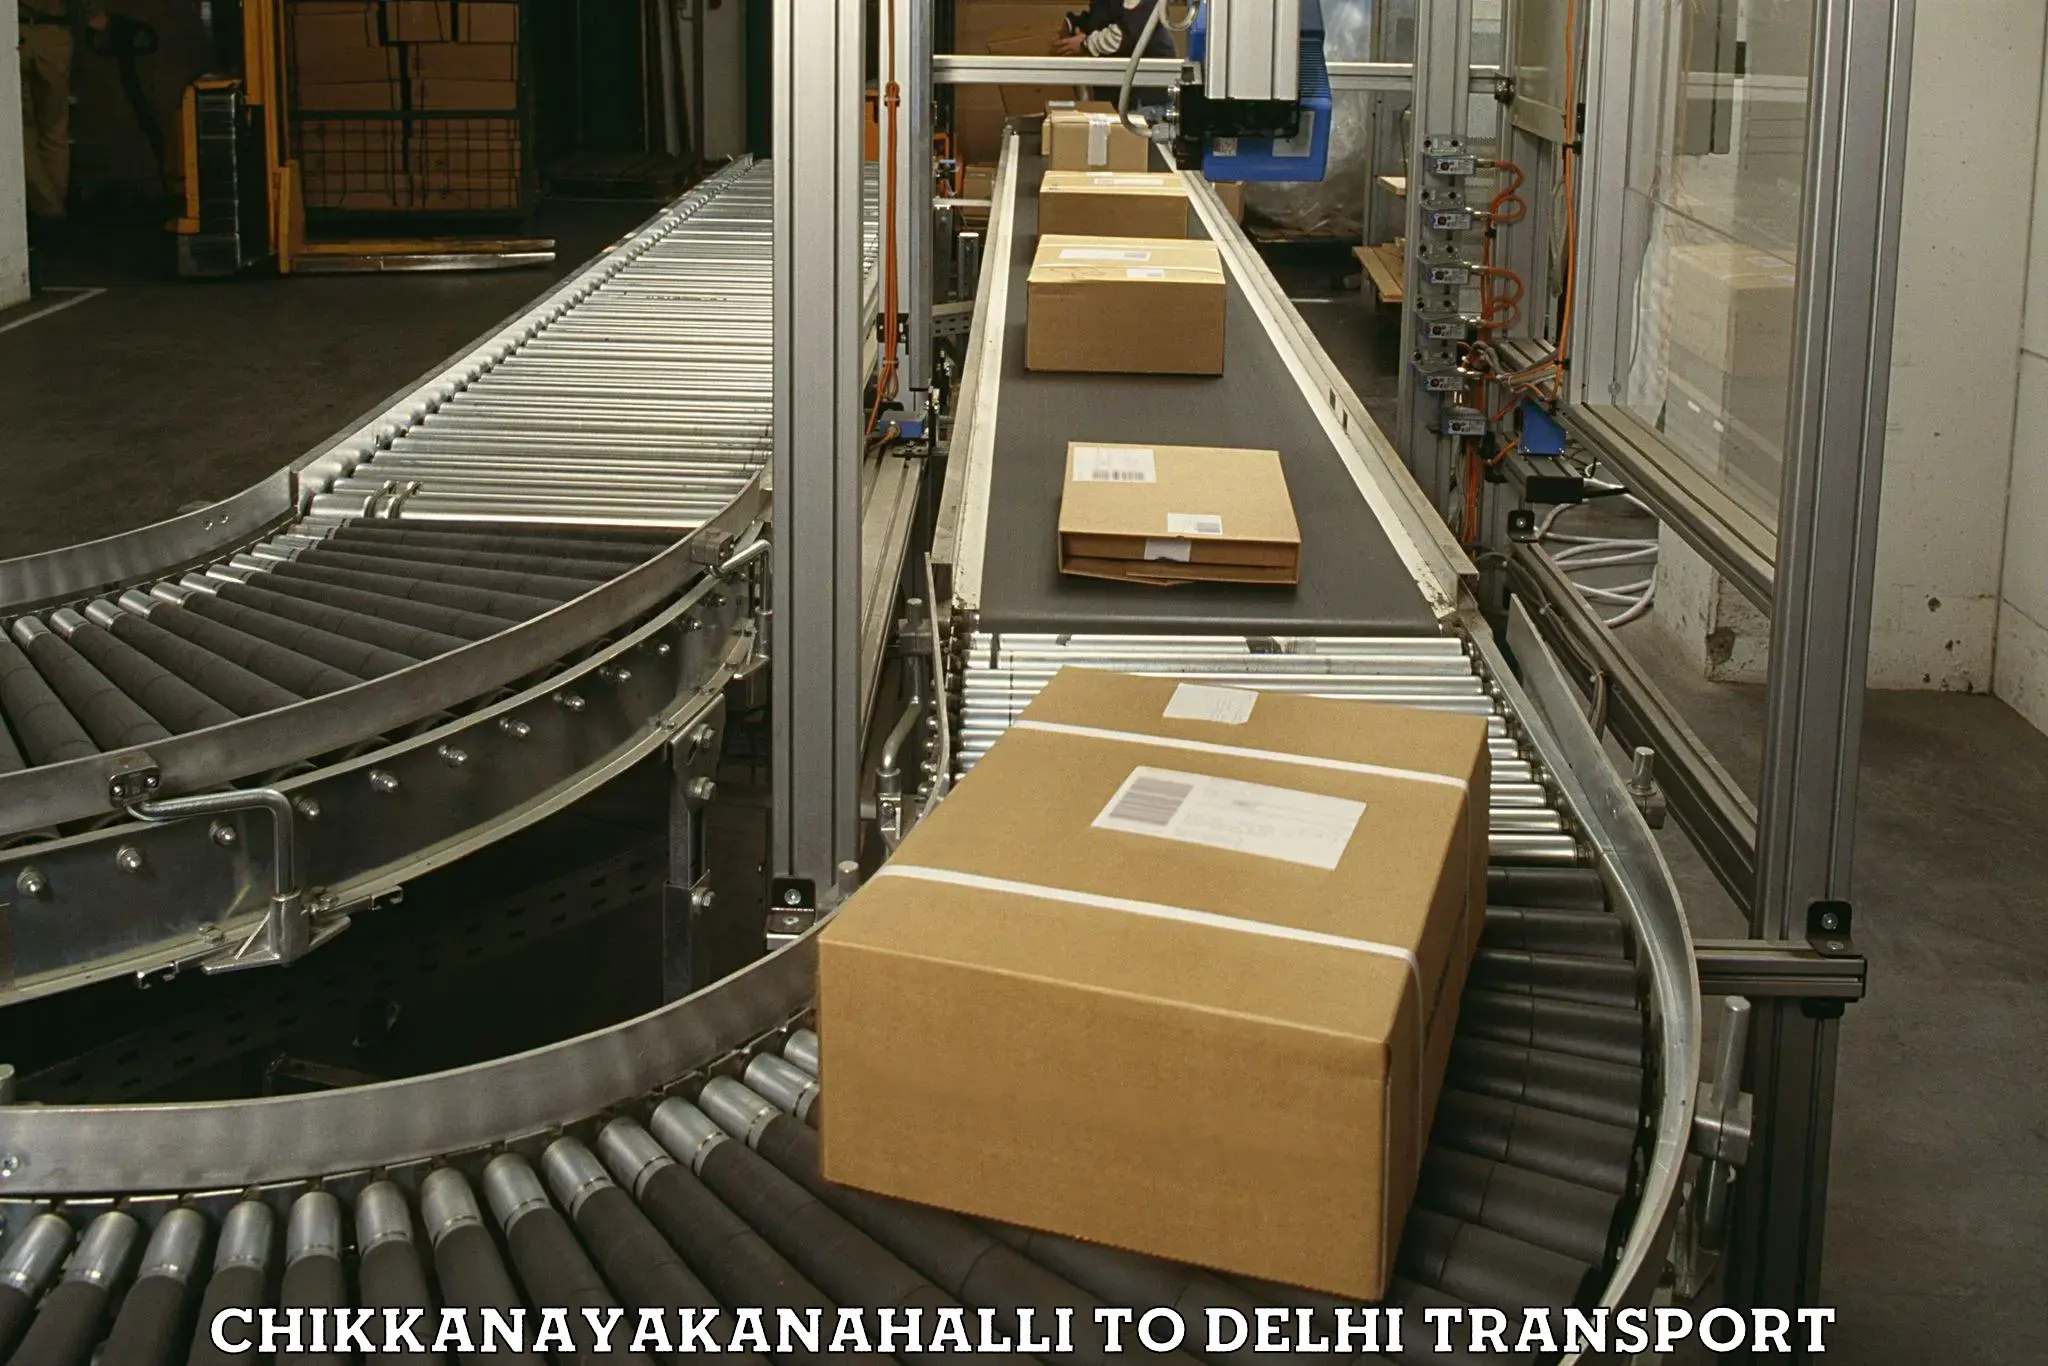 Vehicle parcel service Chikkanayakanahalli to Jhilmil